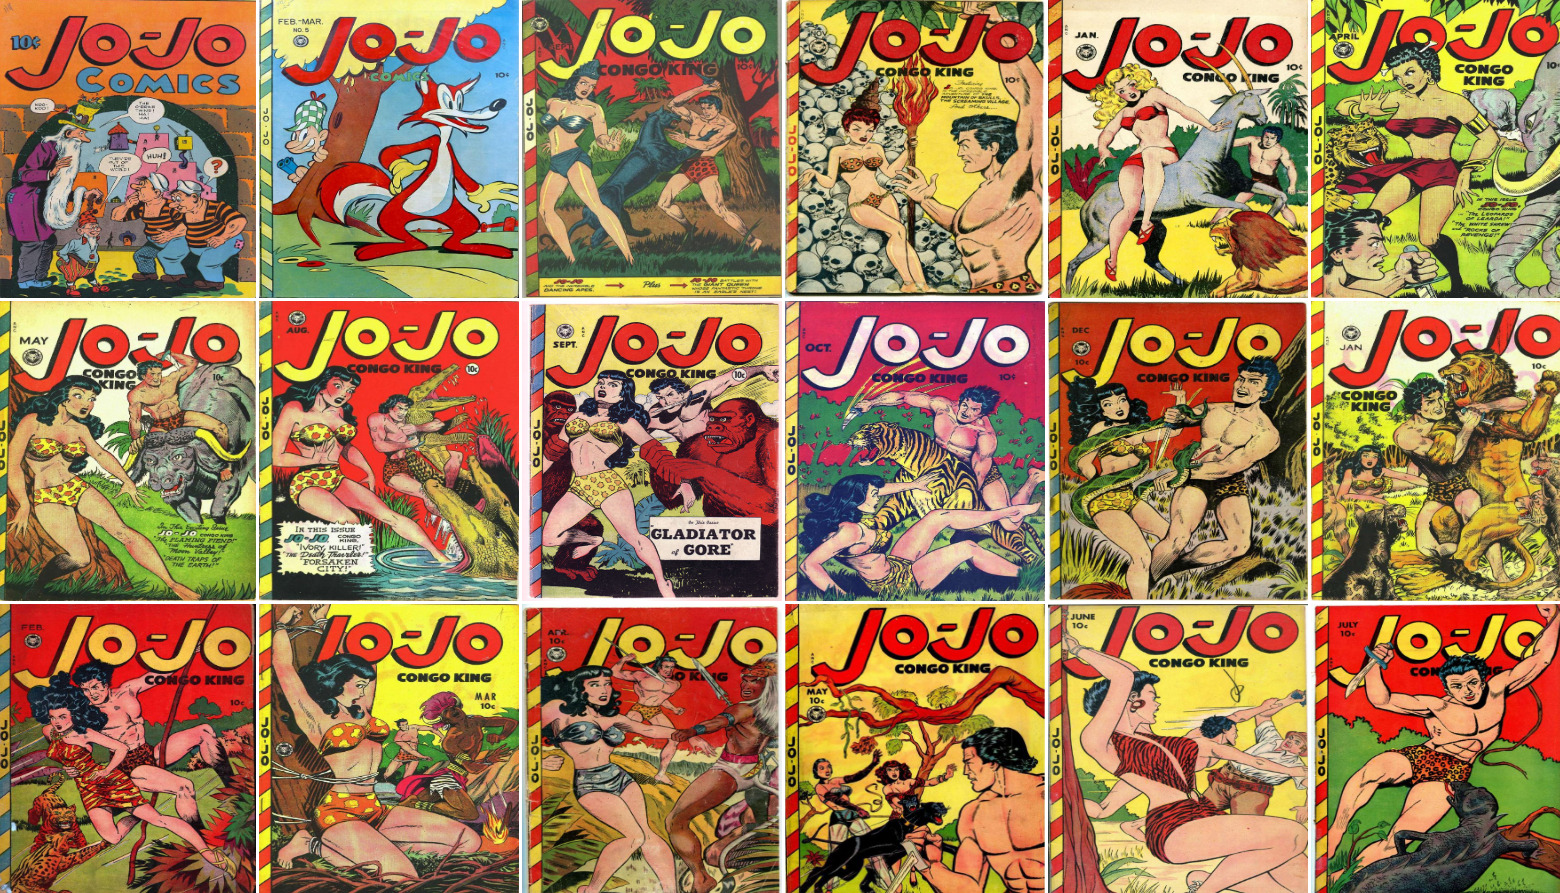 1946 - 1949 Jo-Jo Comic Book Package - 18 eBooks on CD